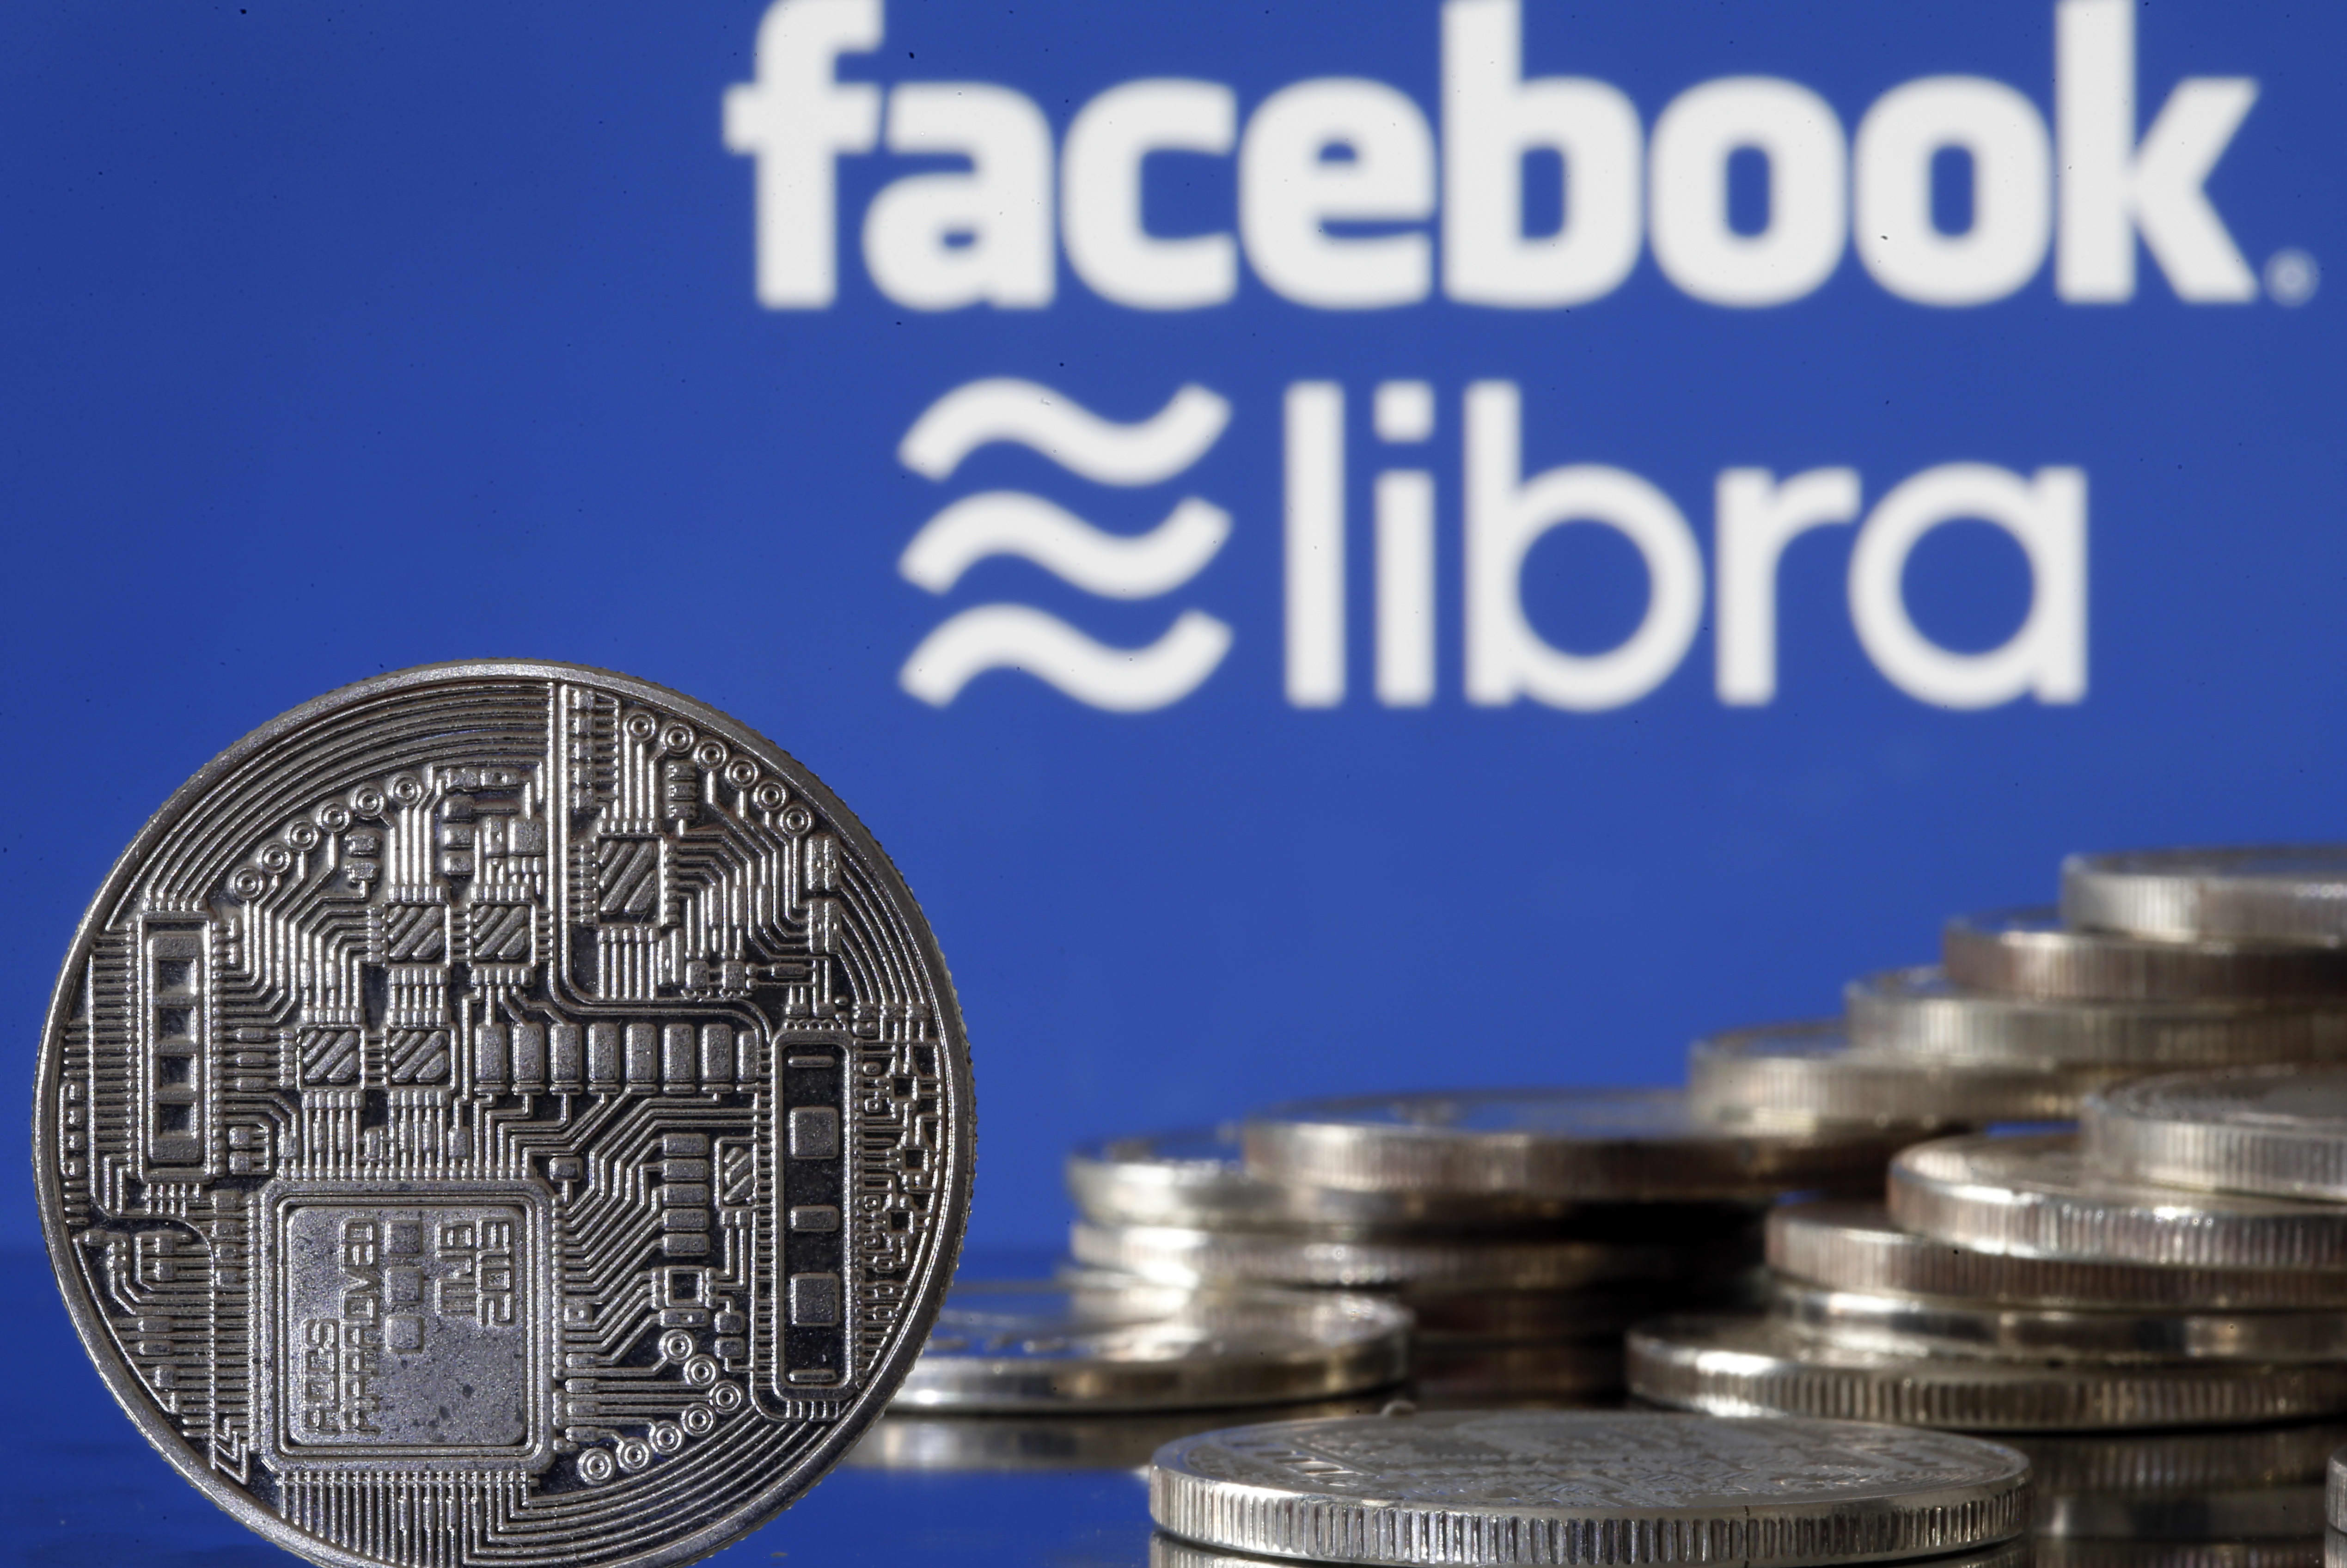 How Facebook raced to build Libra coin